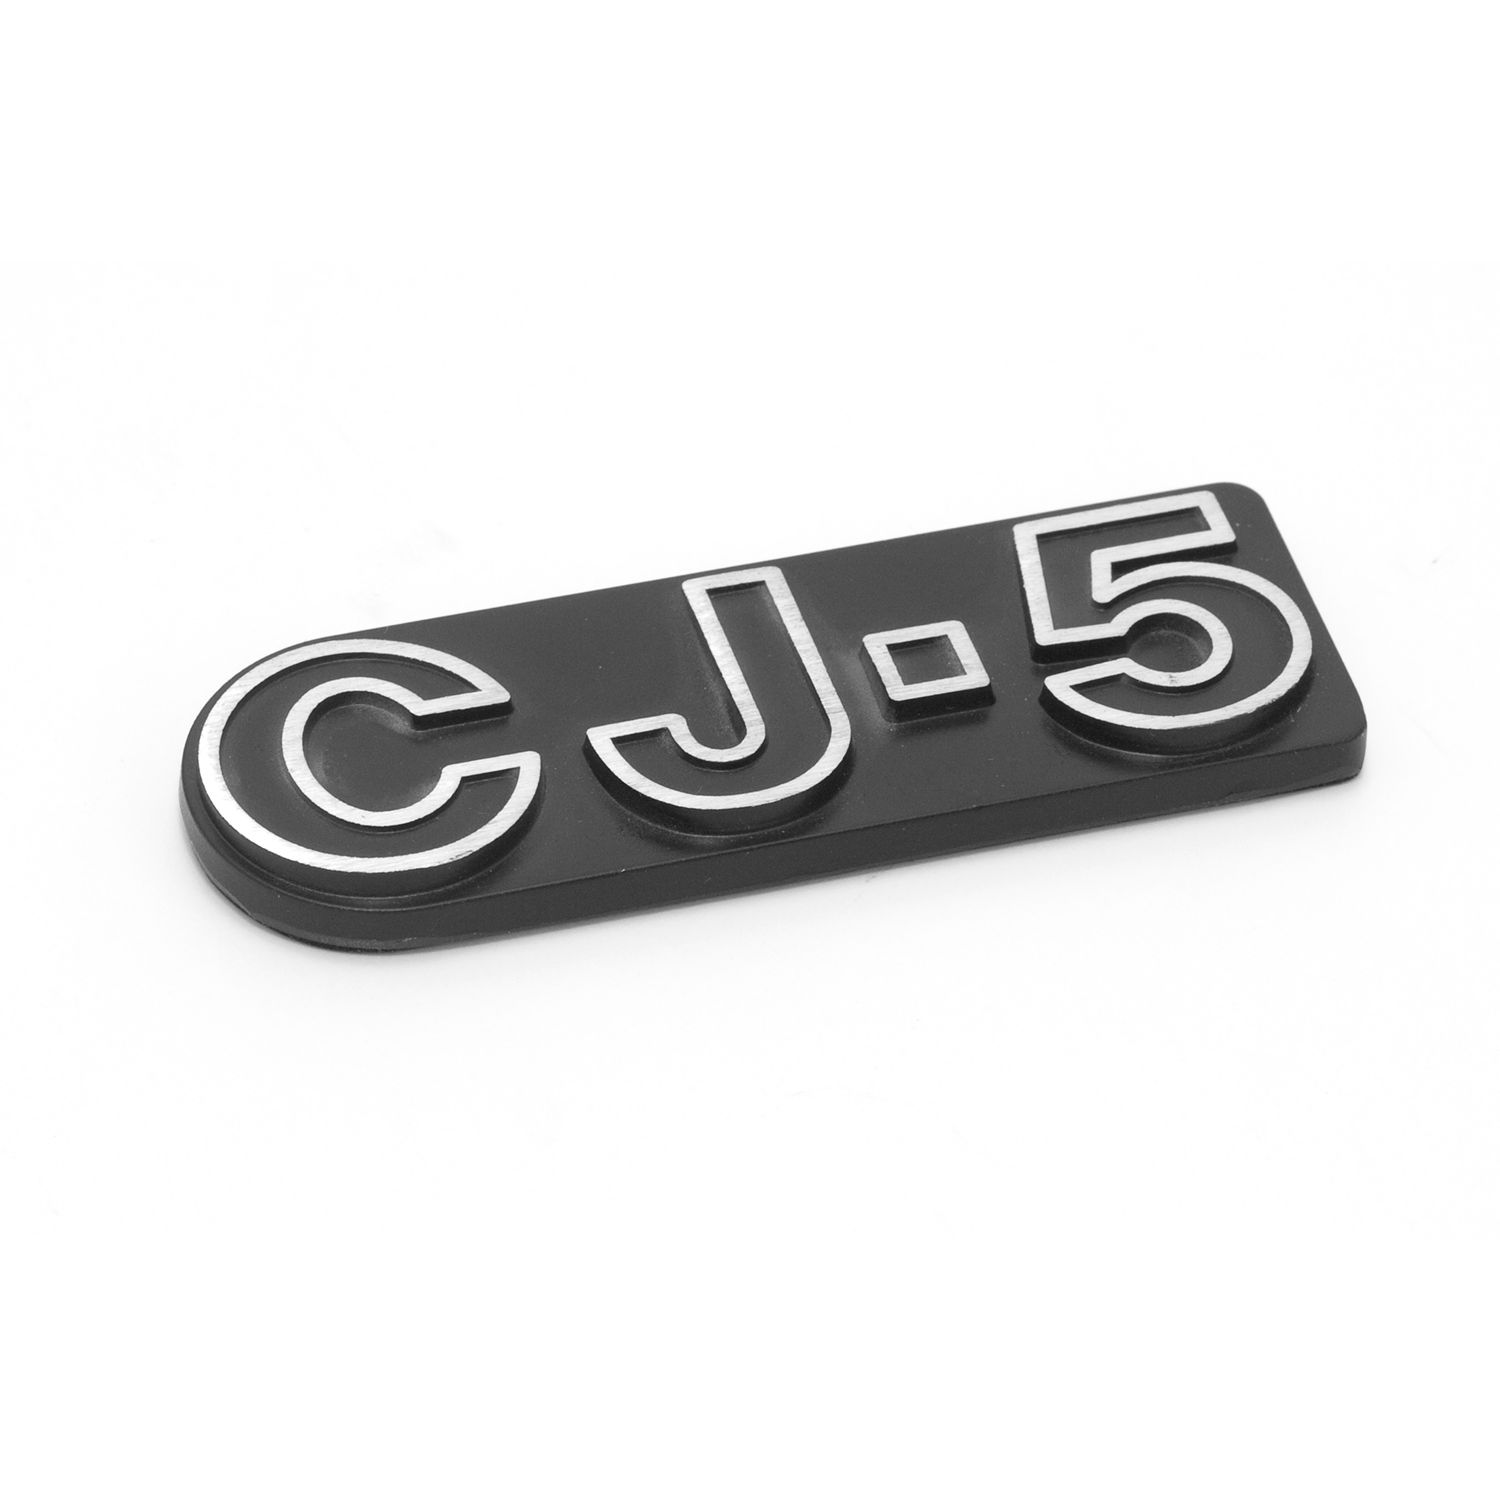 CJ5 Emblem; 76-83 Jeep CJ5 1